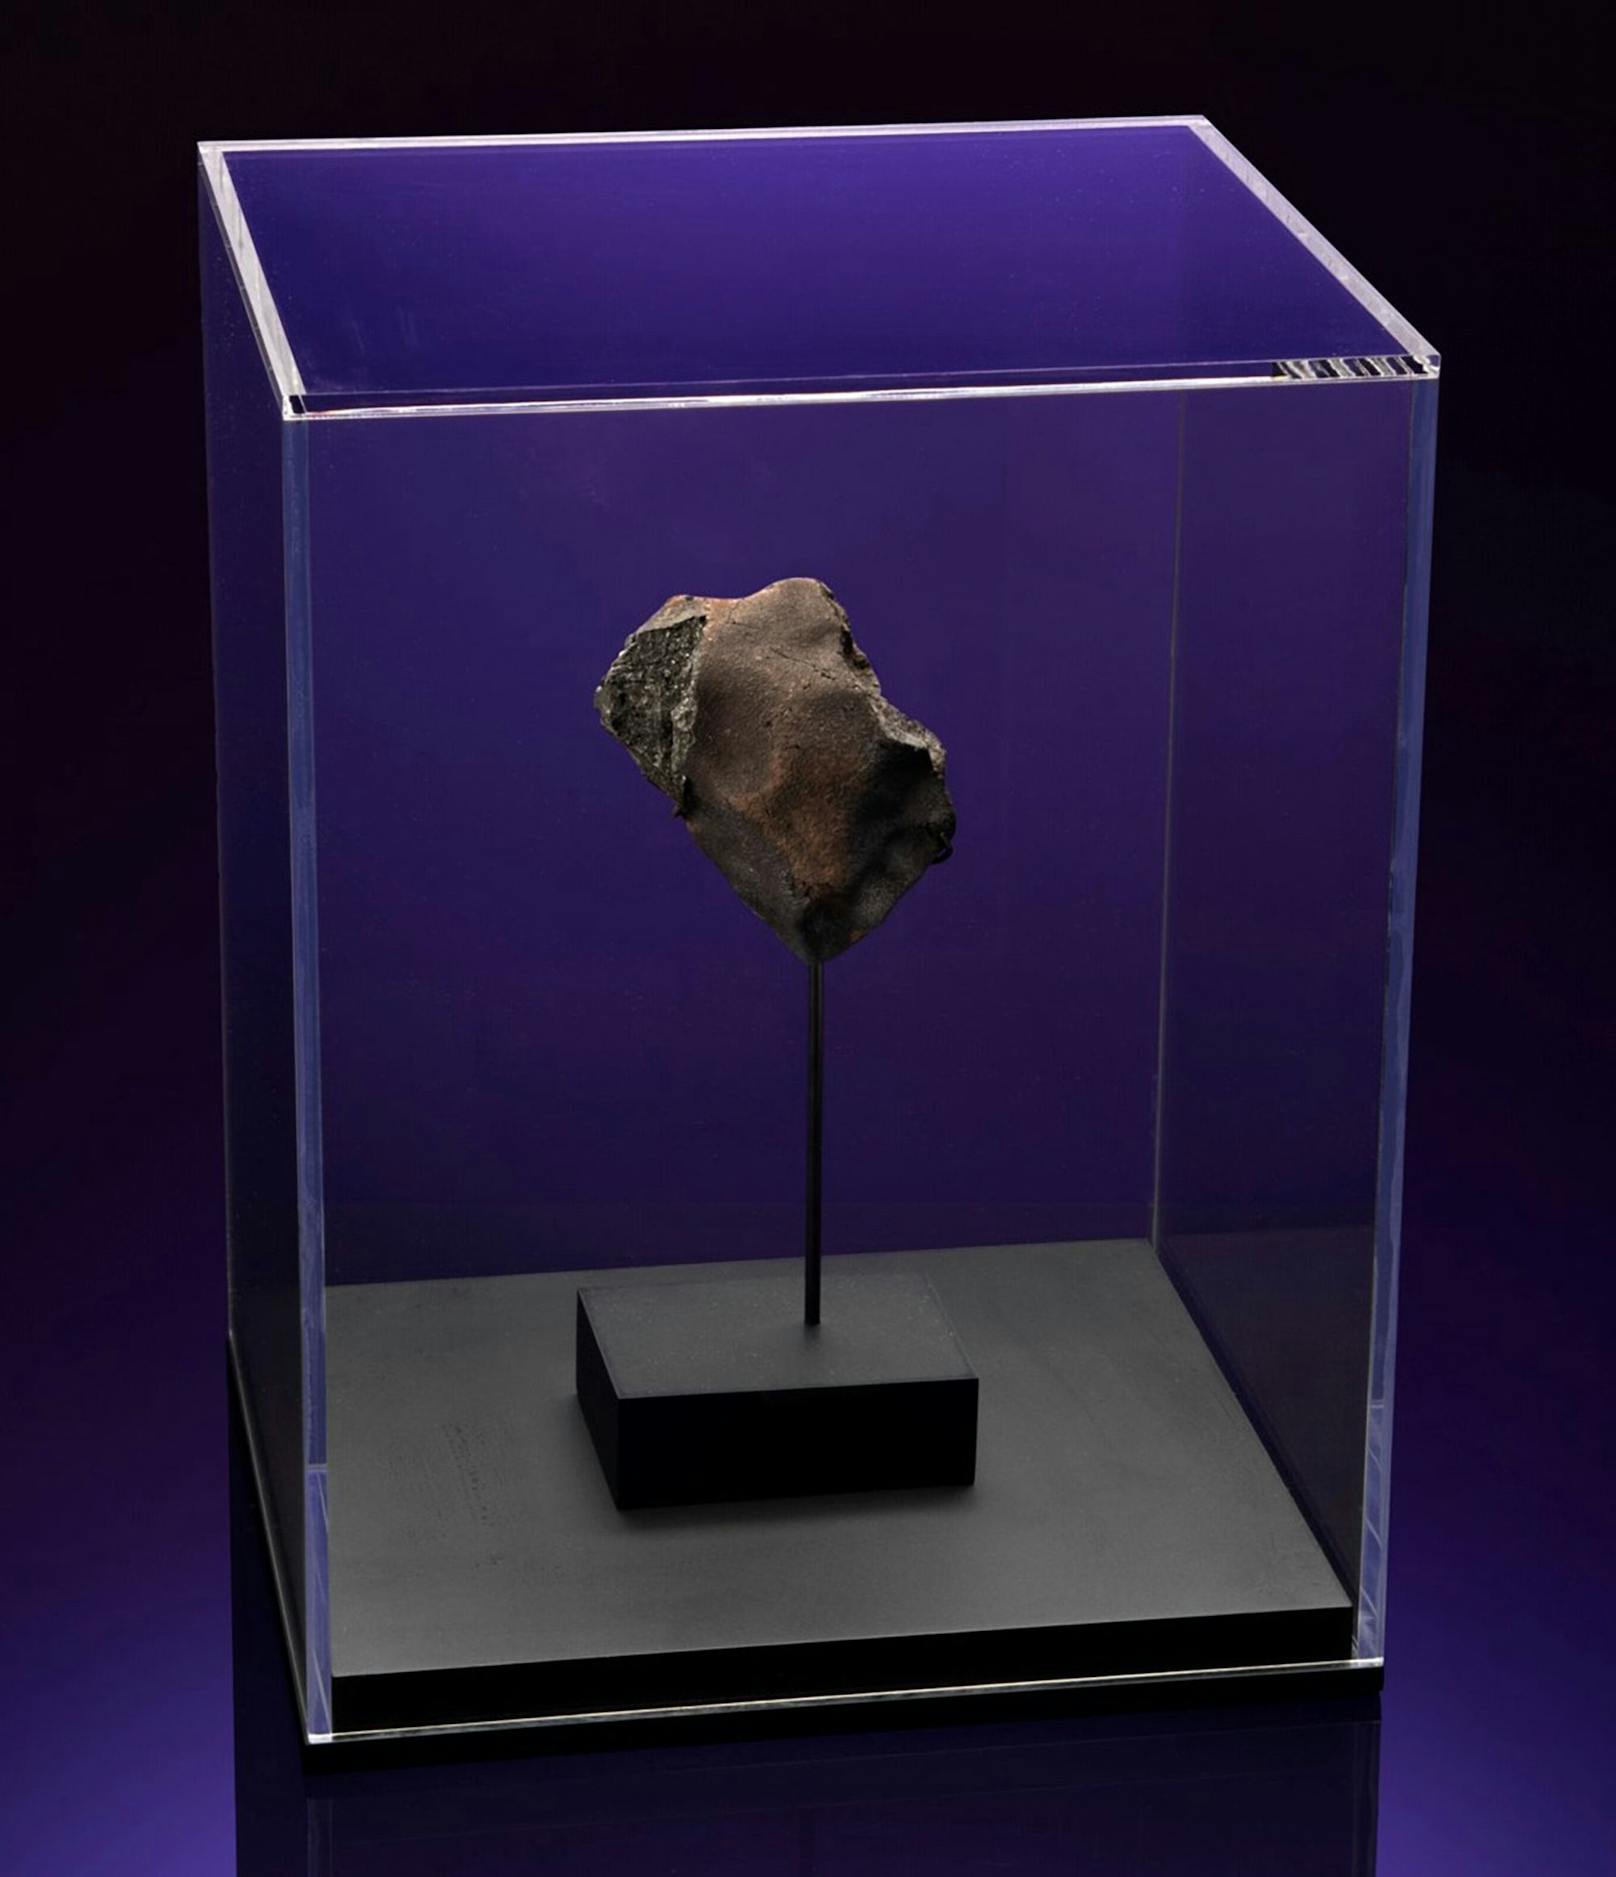 Auch der golfballgroße Meteorit, der 2019 in der Hütte einschlug, kann ersteigert werden. Allerdings wird dessen Wert weit geringer eingeschätzt – mit lediglich rund 50.000 Euro.